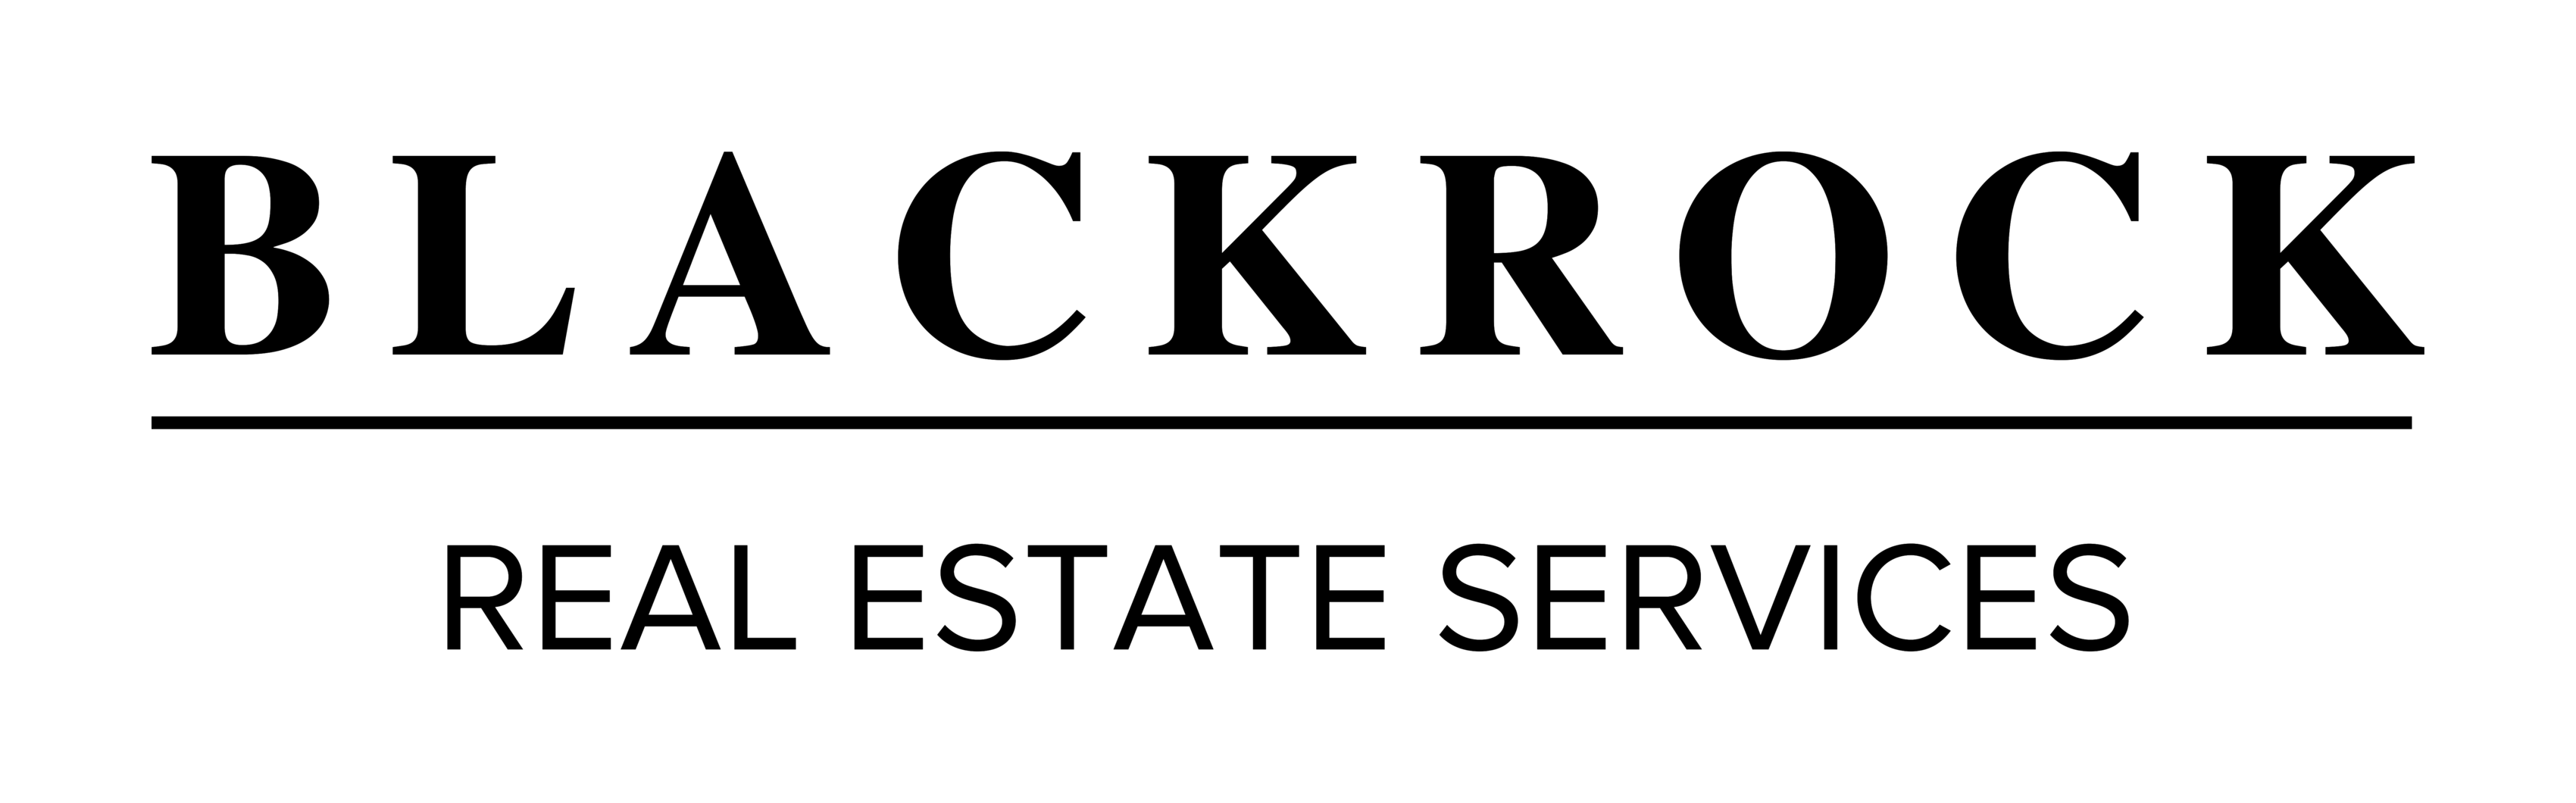 Blackrock Logo - sellblackrock – Blackrock Real Estate Services